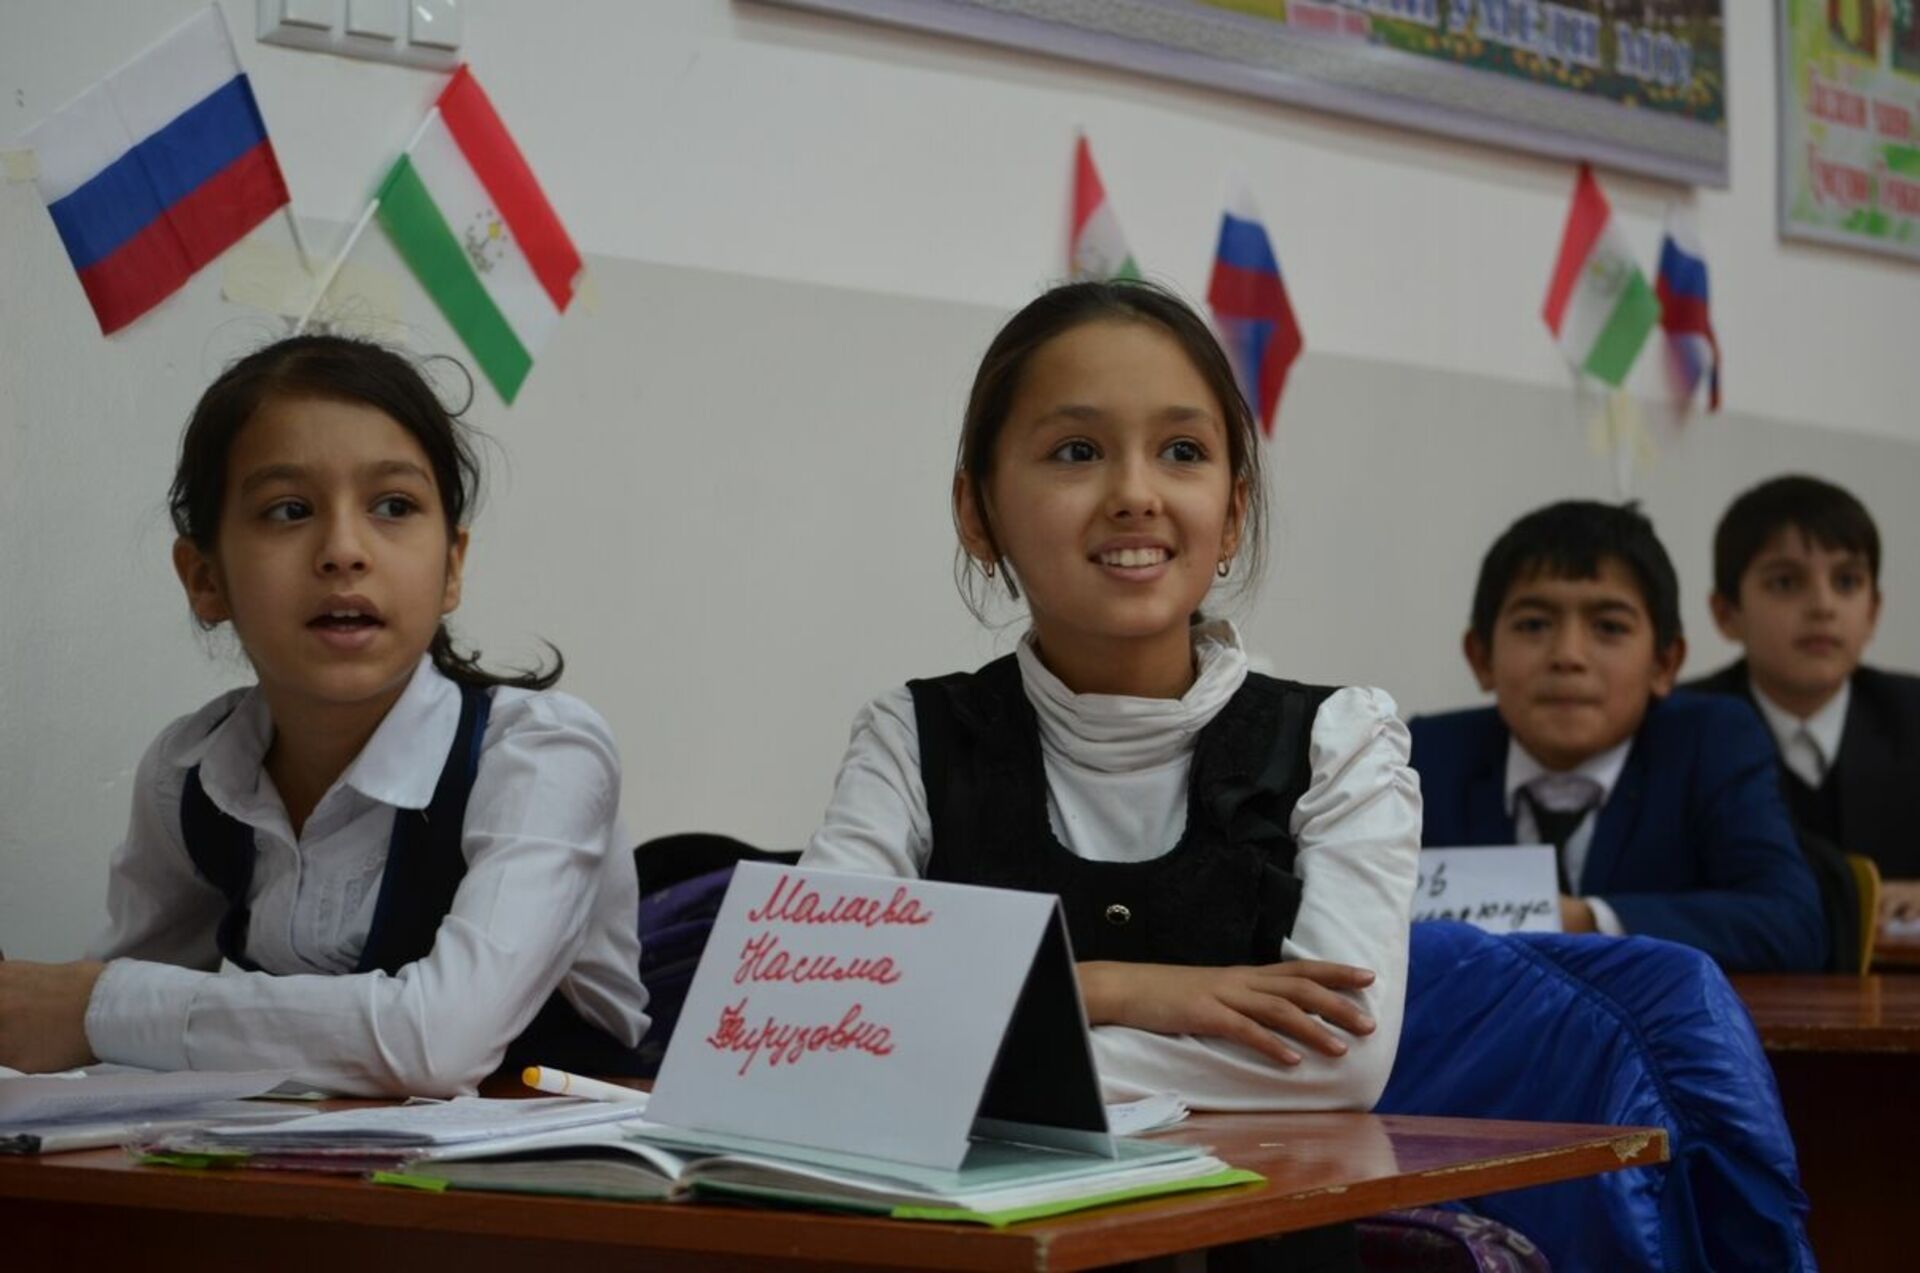 Таджикский понимаешь таджикский. Такжикская школа в Таджикистане. Русскоязычные школы в Таджикистане. Русско таджикские школы в Таджикистане. Русский язык в Таджикистане в школах.